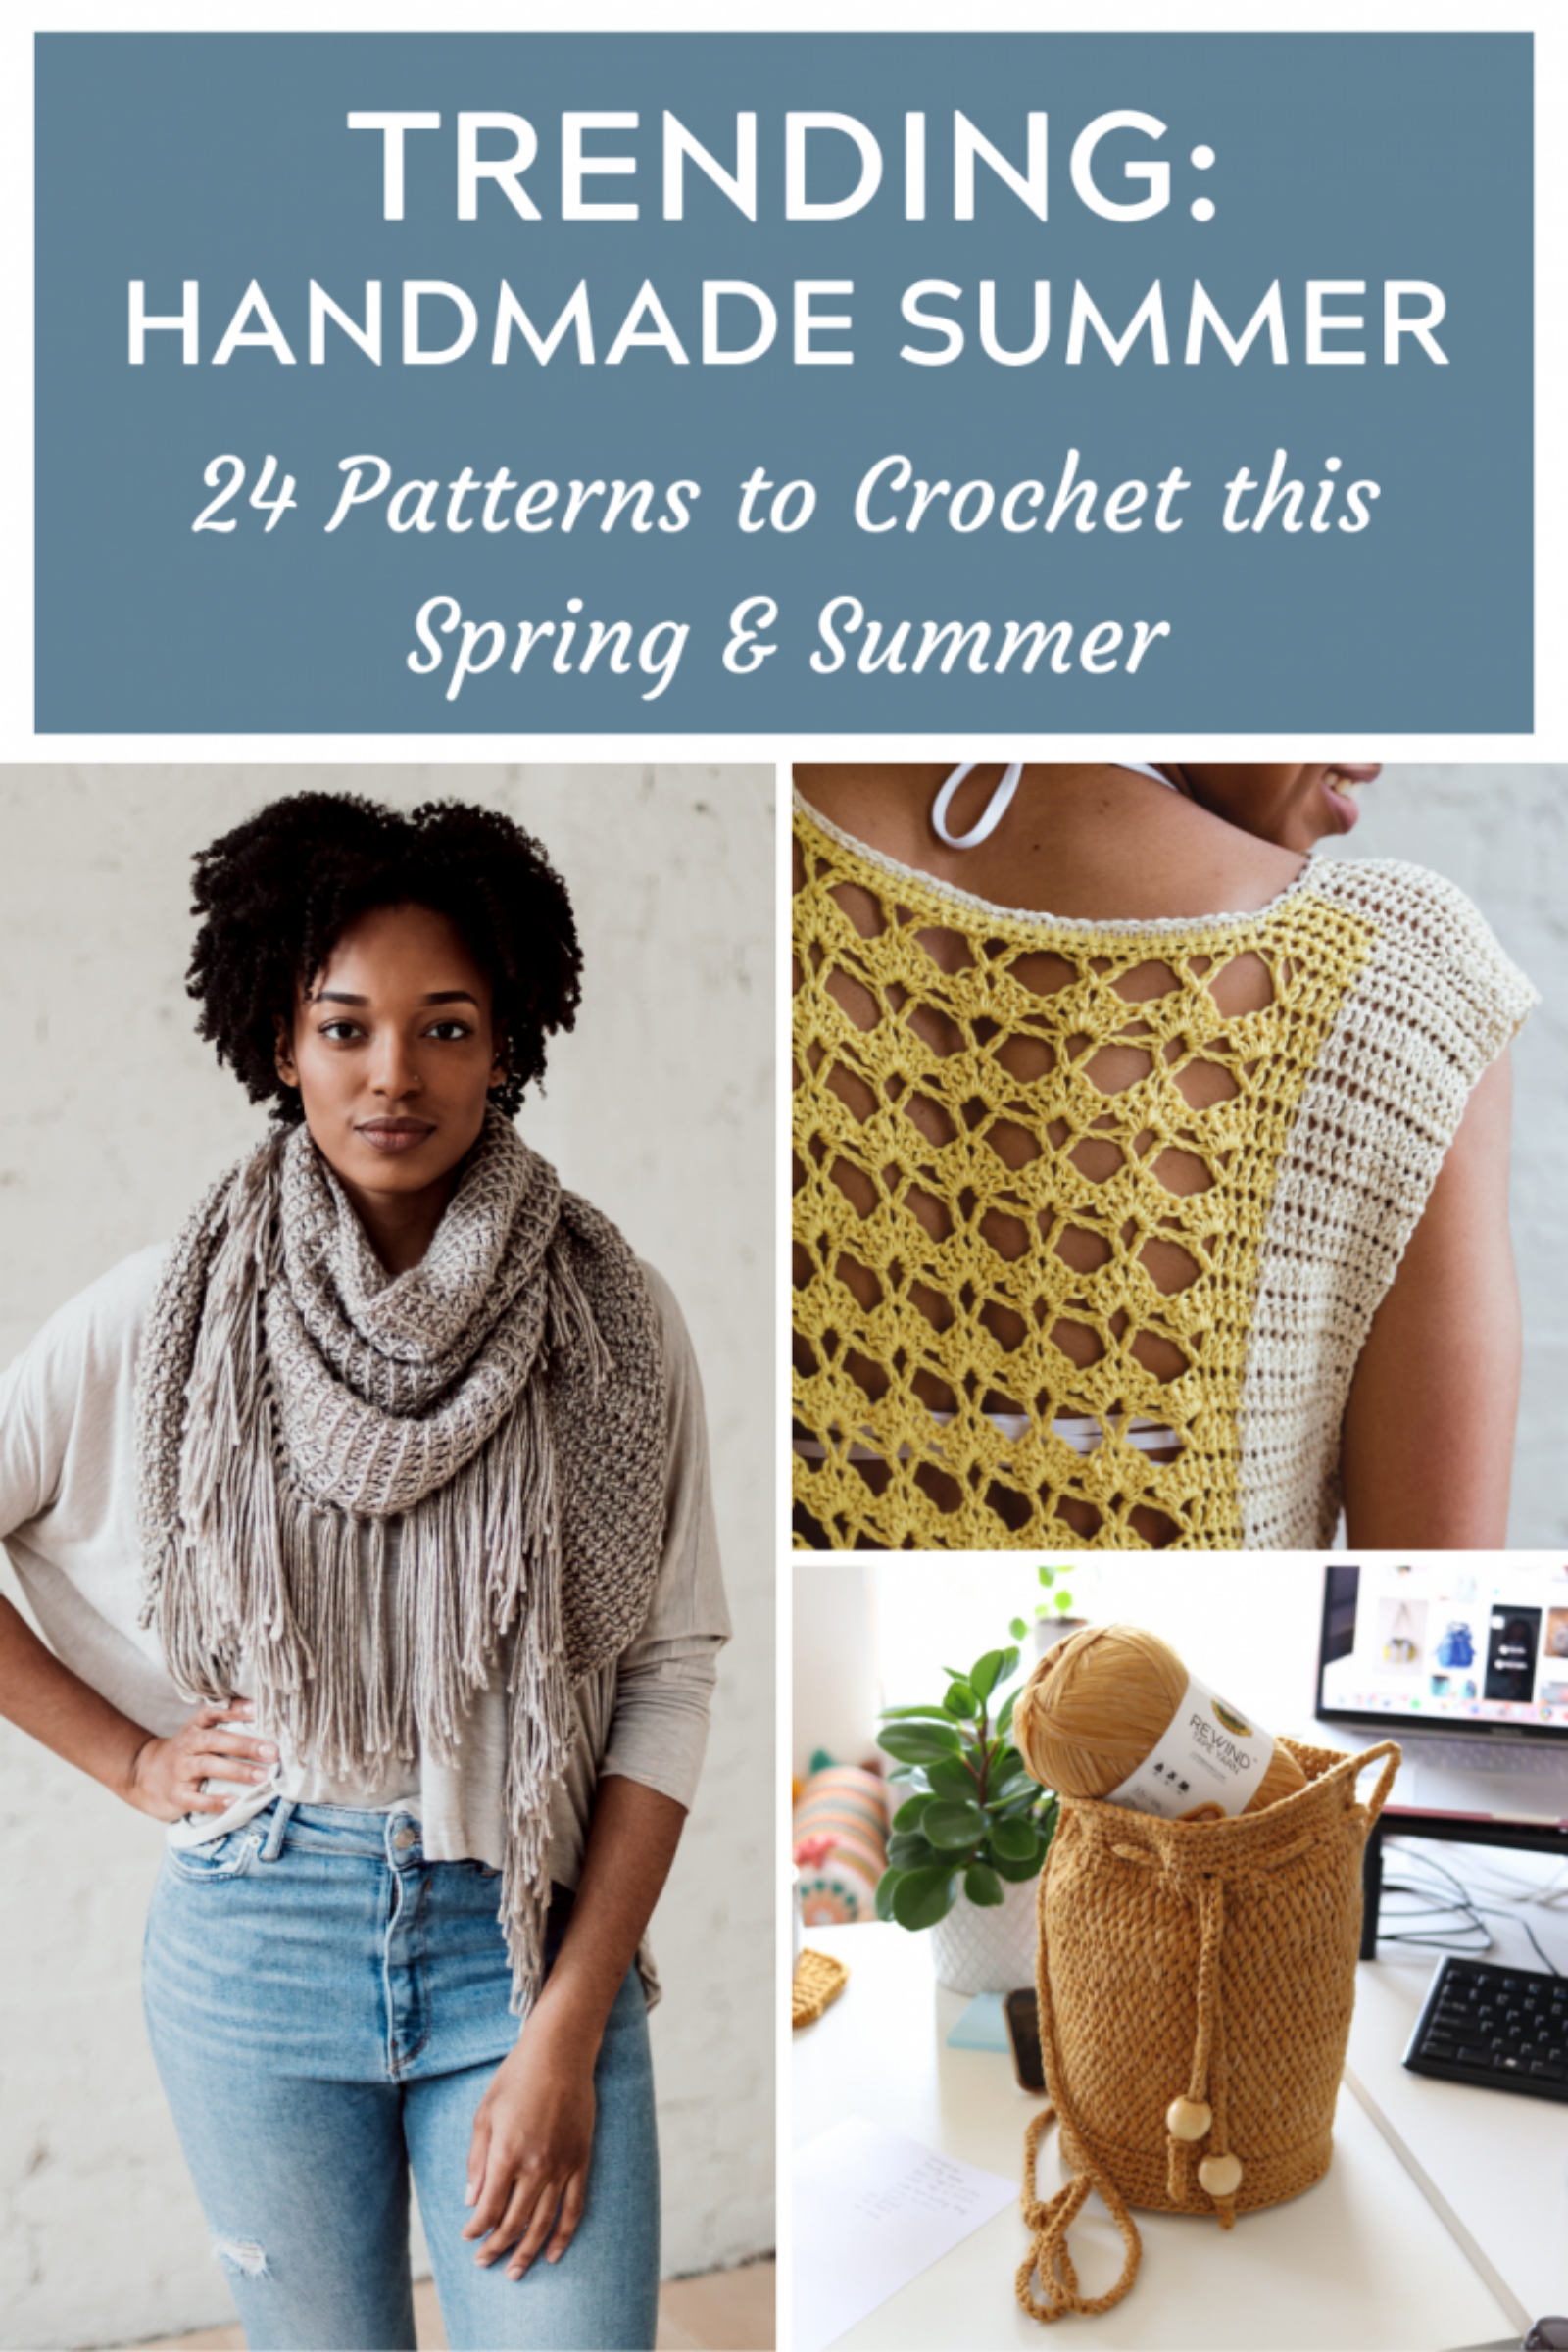 9 Spring & Summer Crochet Patterns [9 Trends]   TL Yarn Crafts